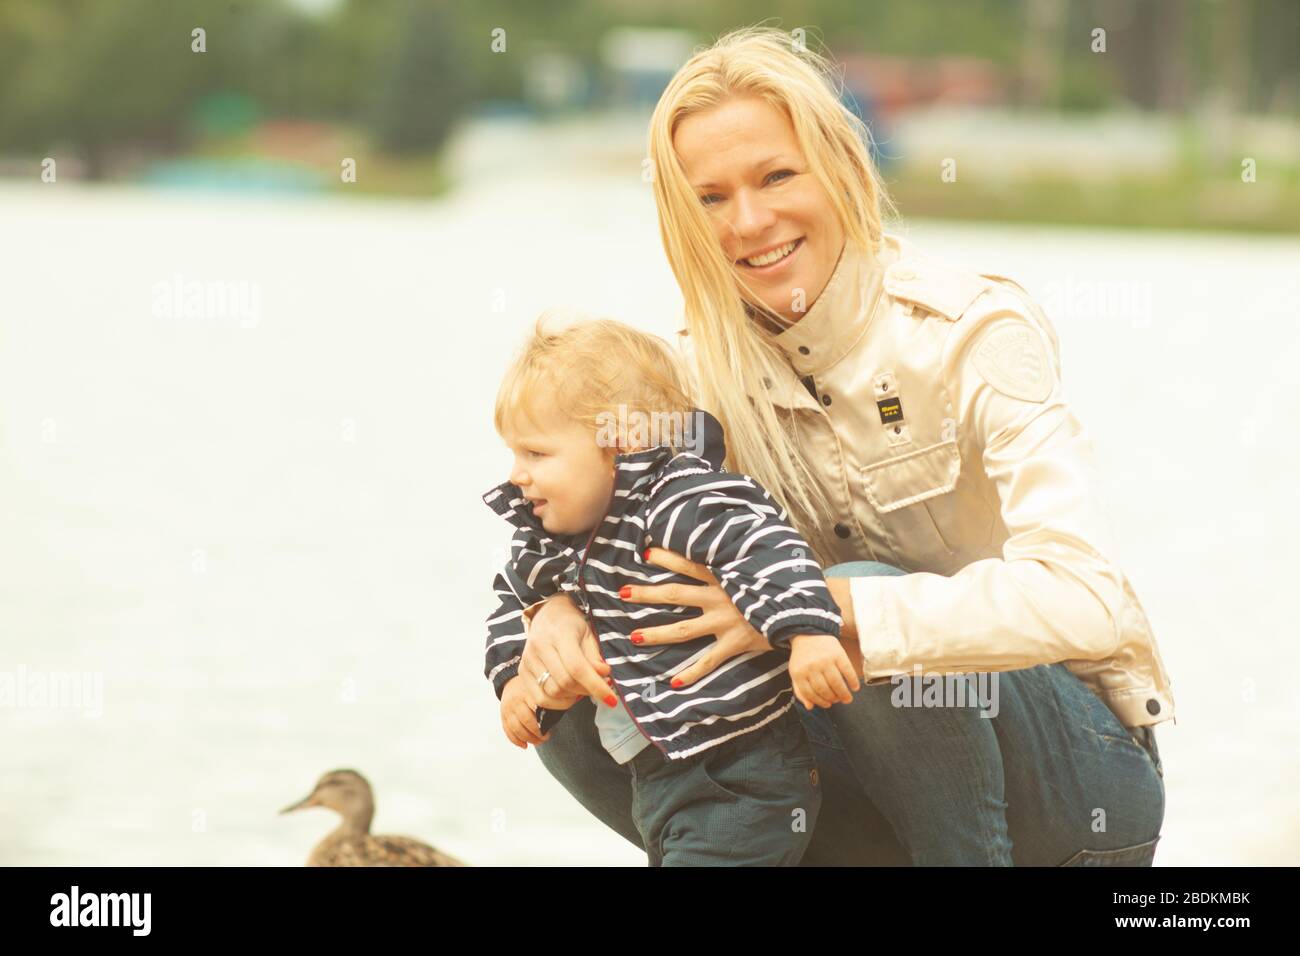 Une mère avec de longs cheveux maintient doucement son petit fils dans ses bras. Photo dans le parc avec lumière naturelle Banque D'Images